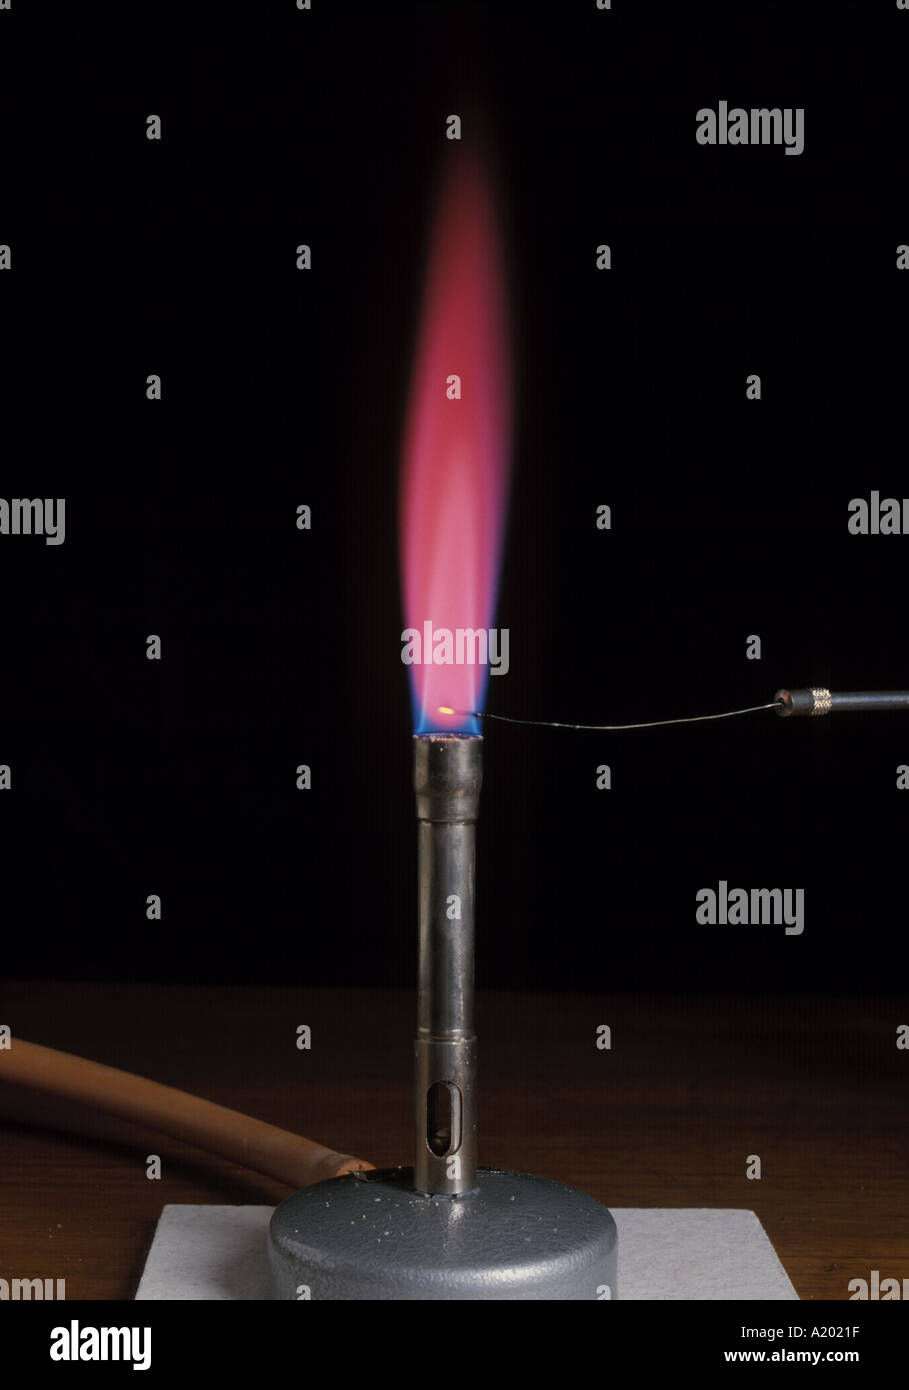 Test de flamme de strontium, montrant une flamme rouge cramoisi brillant, réalisé avec un brûleur de bunsen, un fil de platine et de nichrome. Isolé sur le noir. Banque D'Images